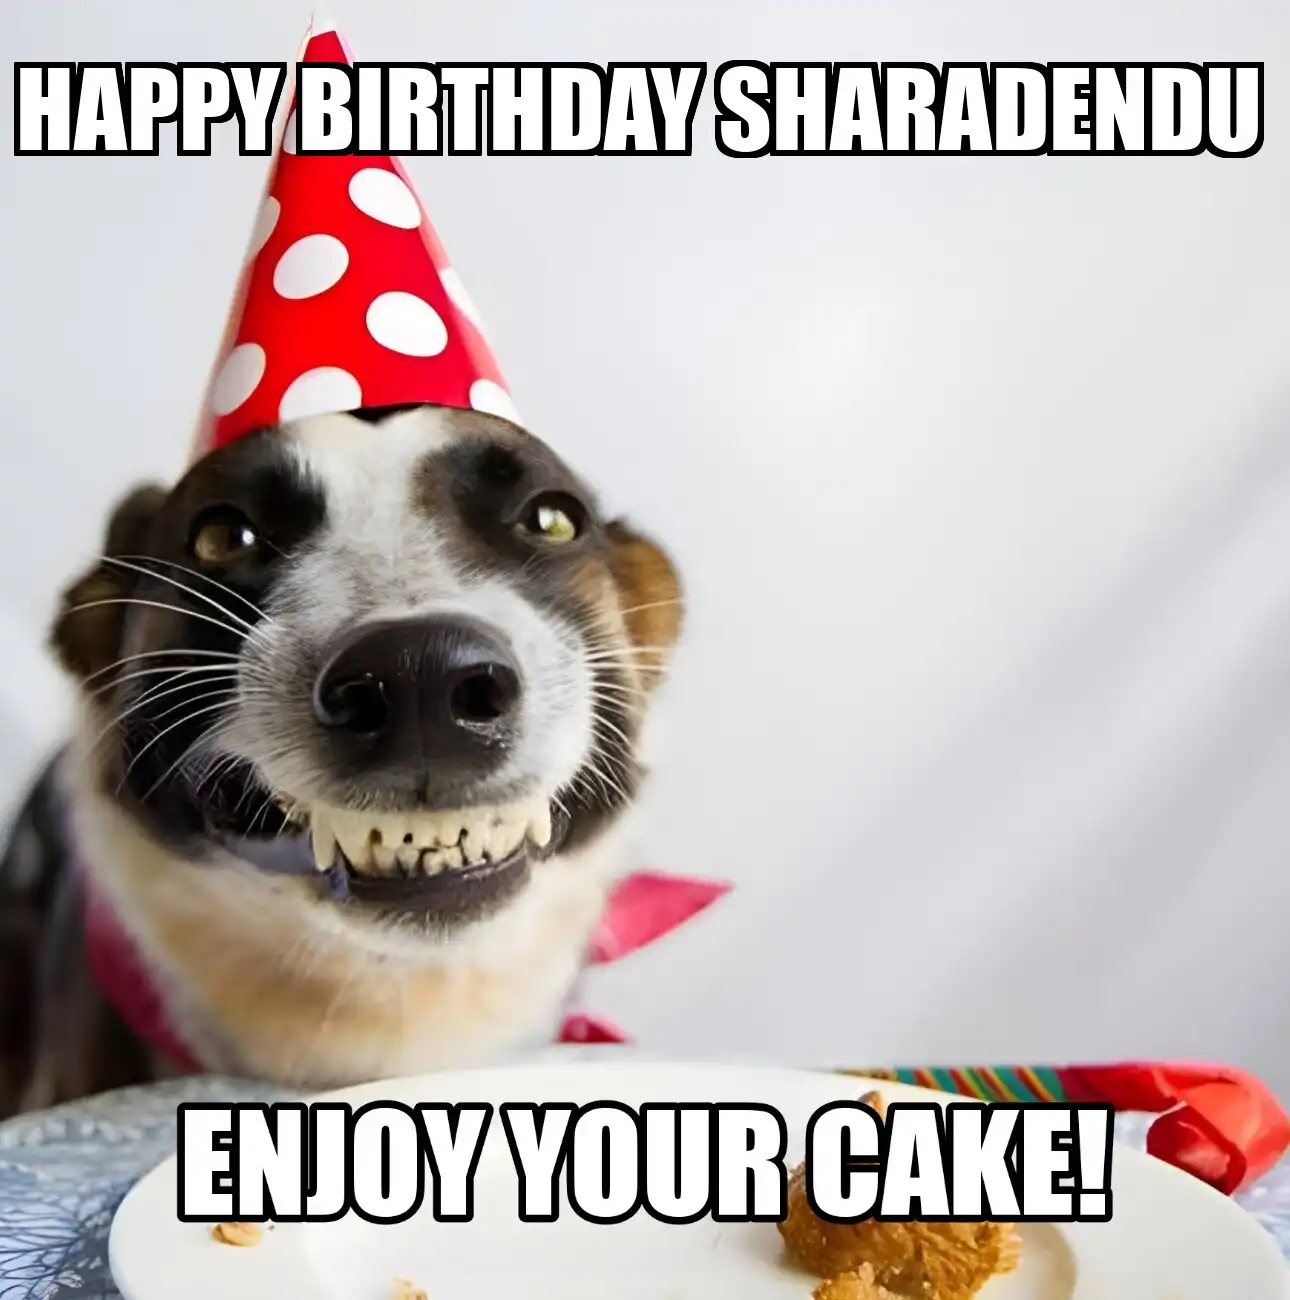 Happy Birthday Sharadendu Enjoy Your Cake Dog Meme